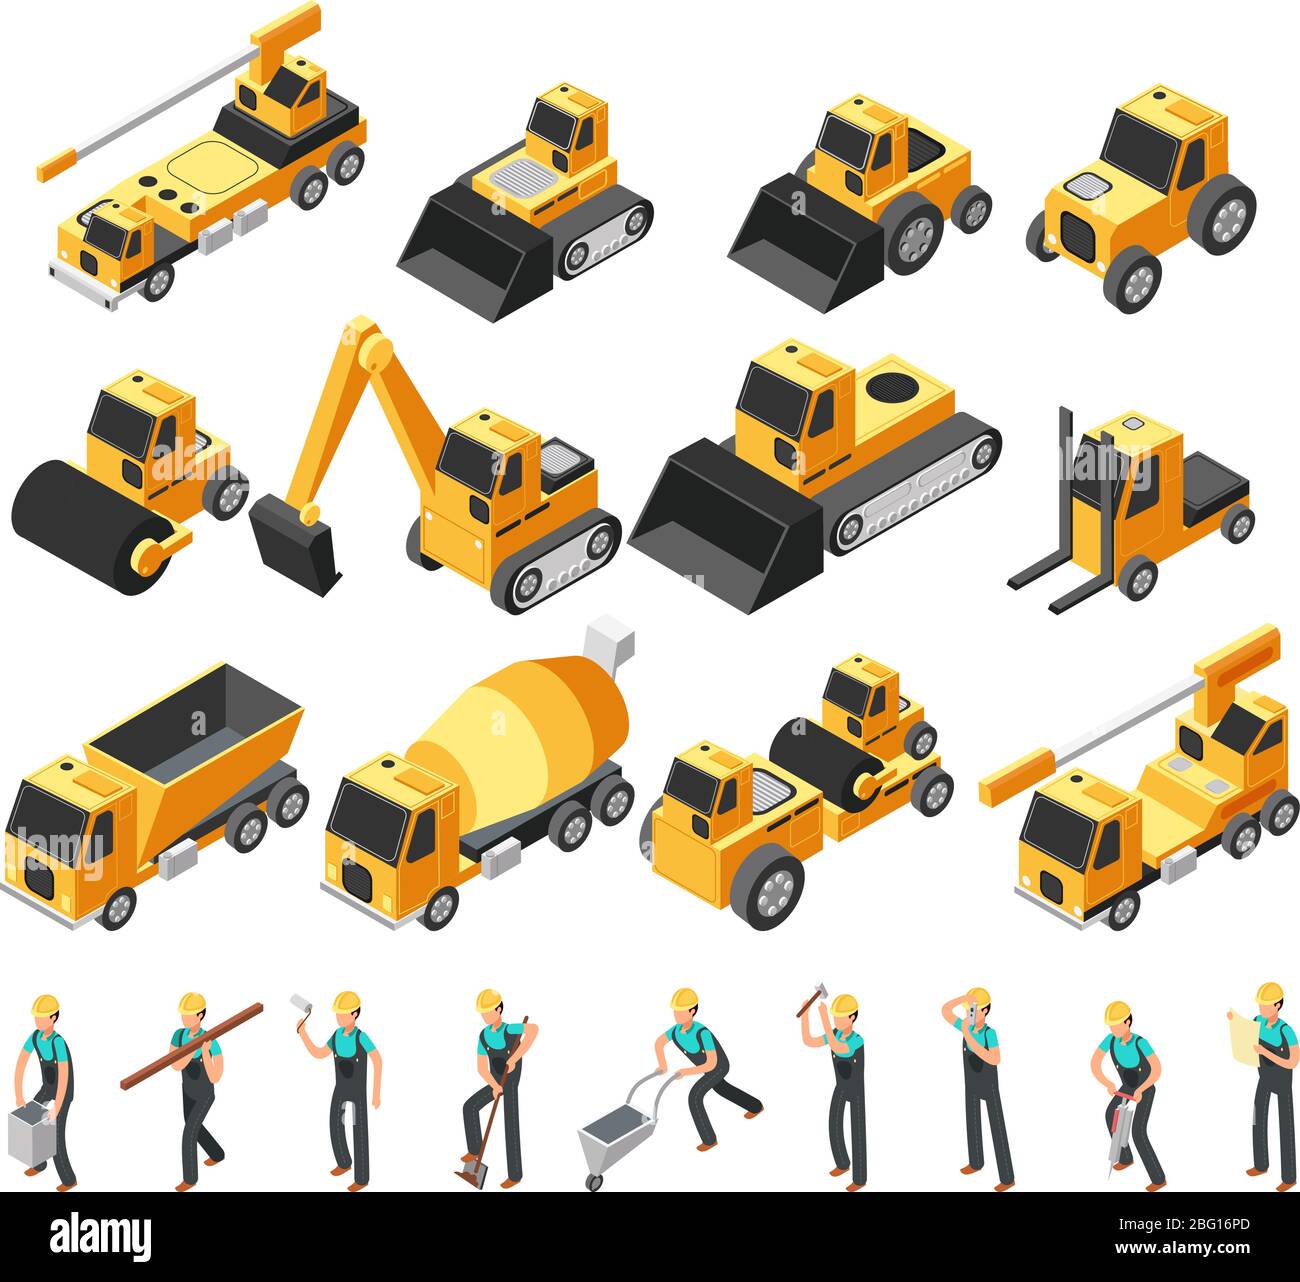 Set vettoriale 3d per operai edili, macchinari e attrezzature isometriche. Illustrazione delle attrezzature per l'edilizia e dei macchinari per l'apripista Illustrazione Vettoriale